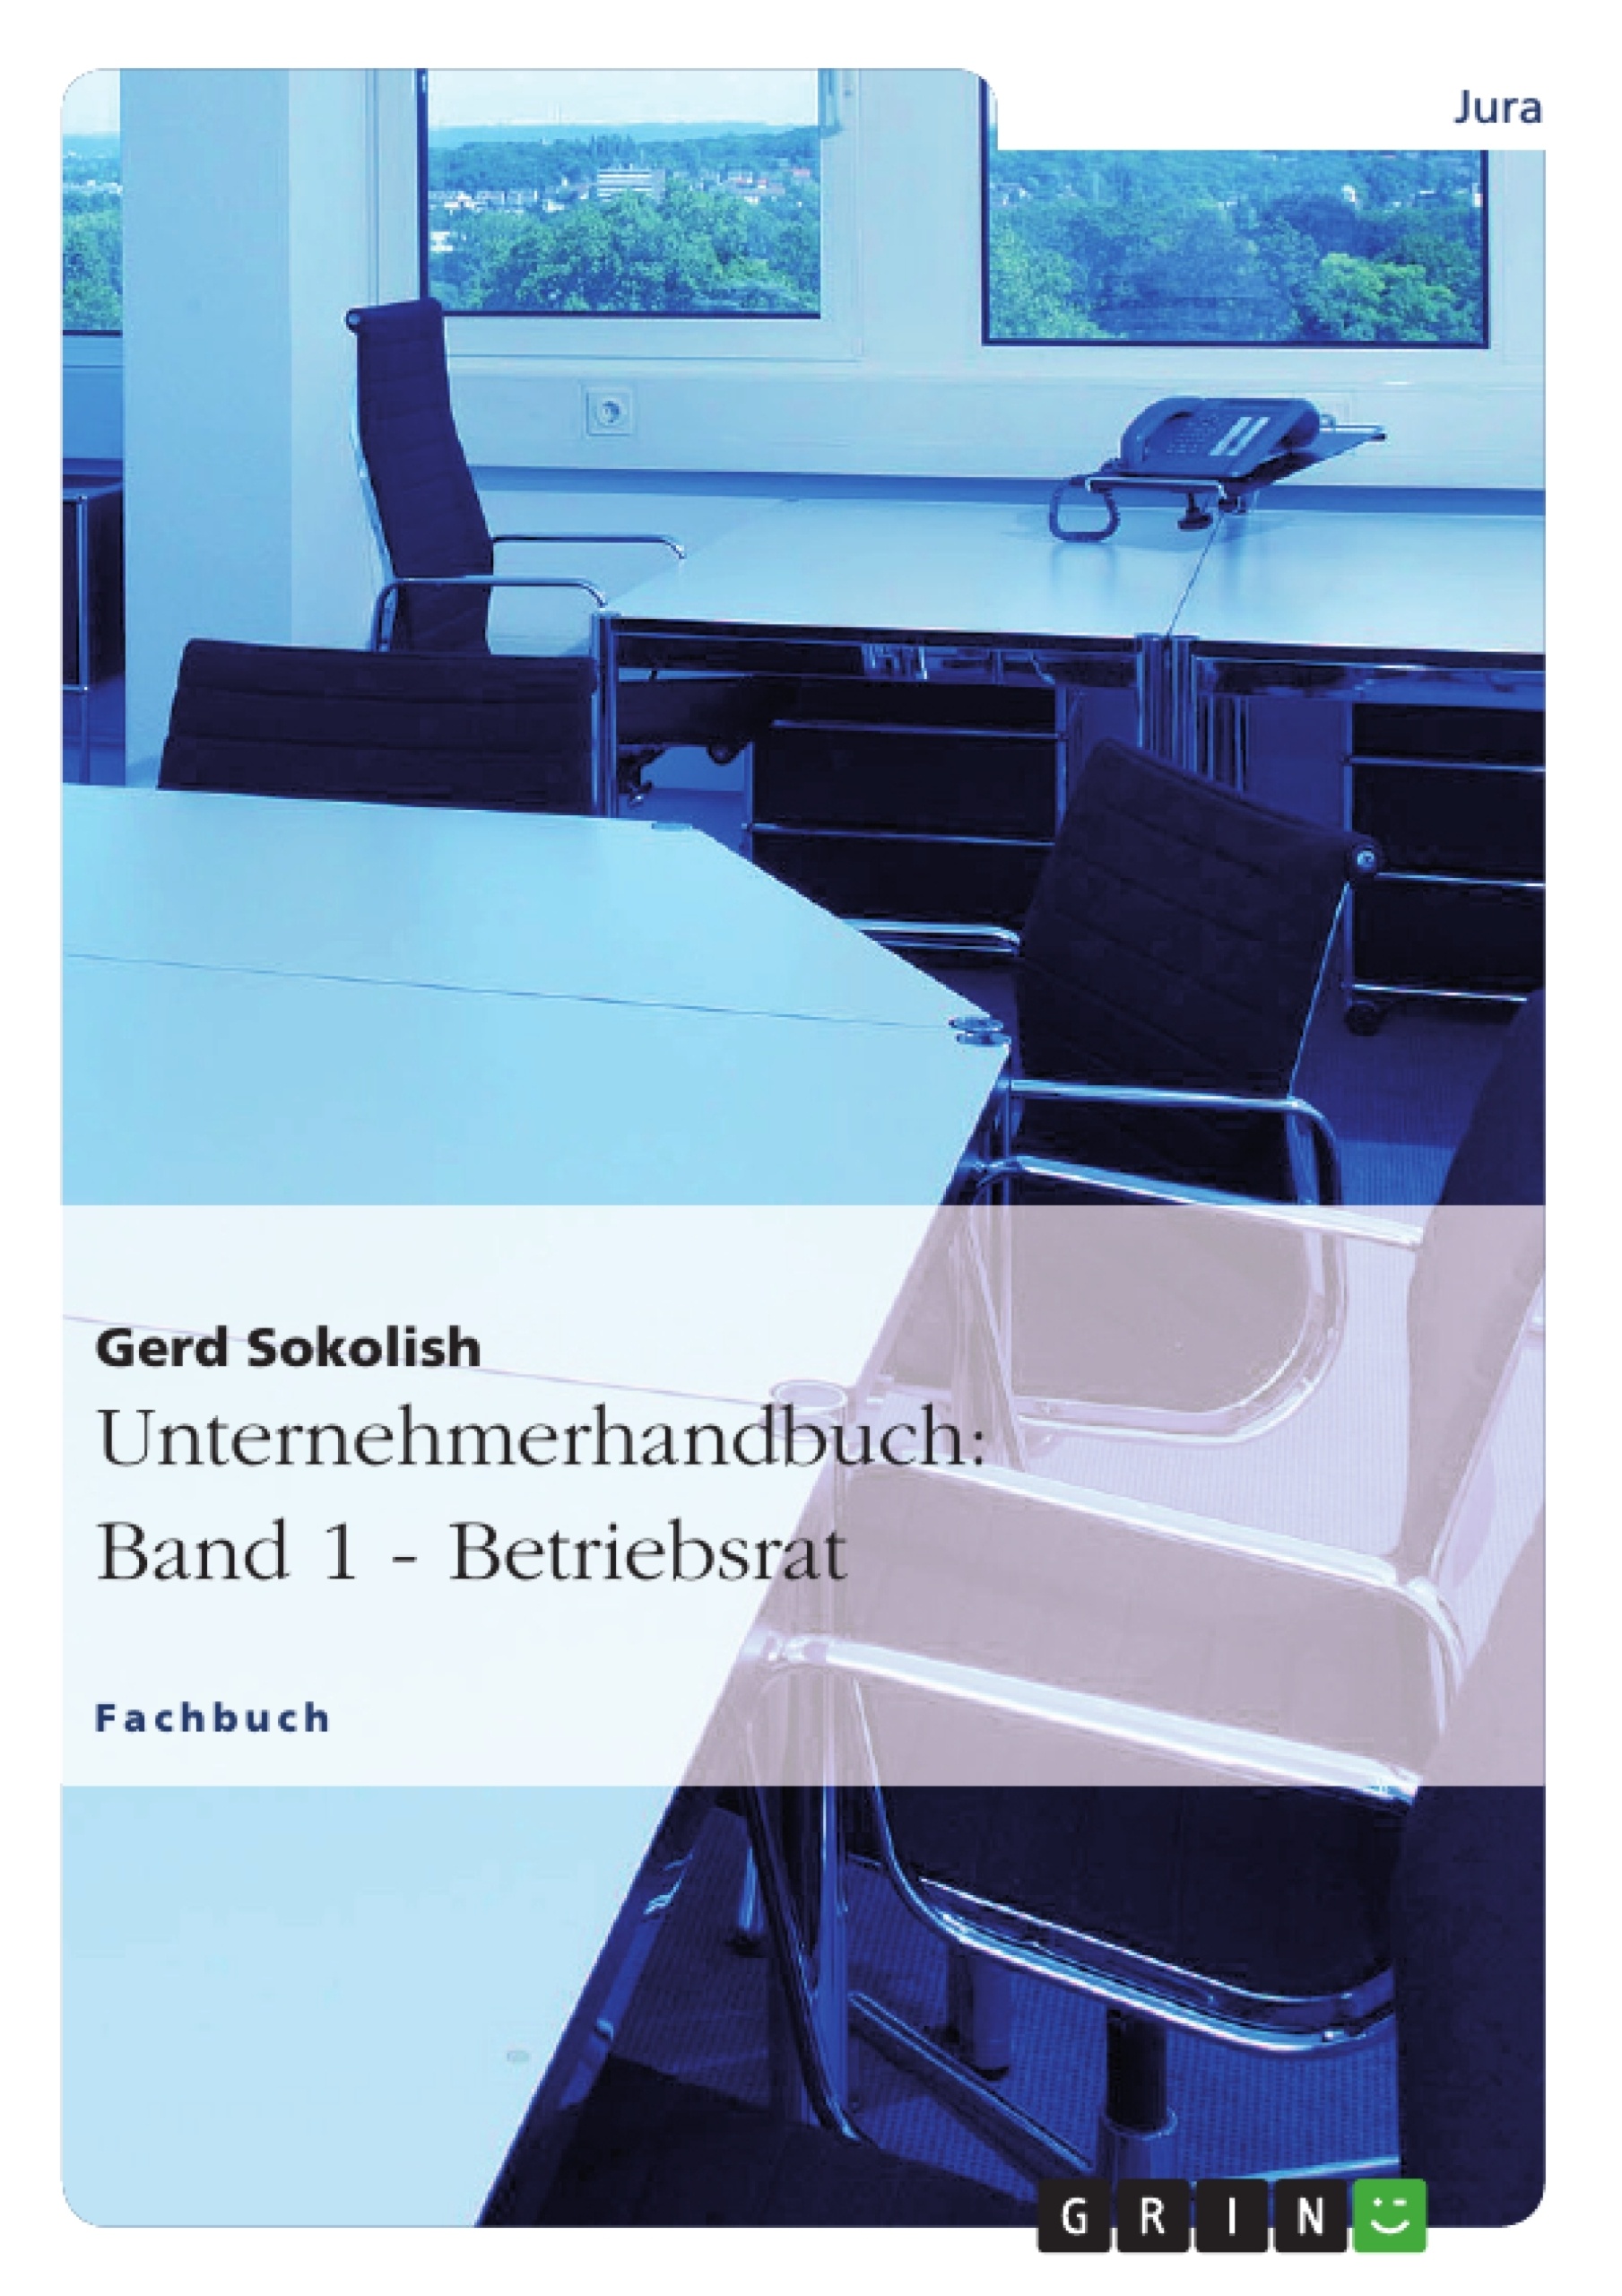 Title: Unternehmerhandbuch: Band 1 - Betriebsrat